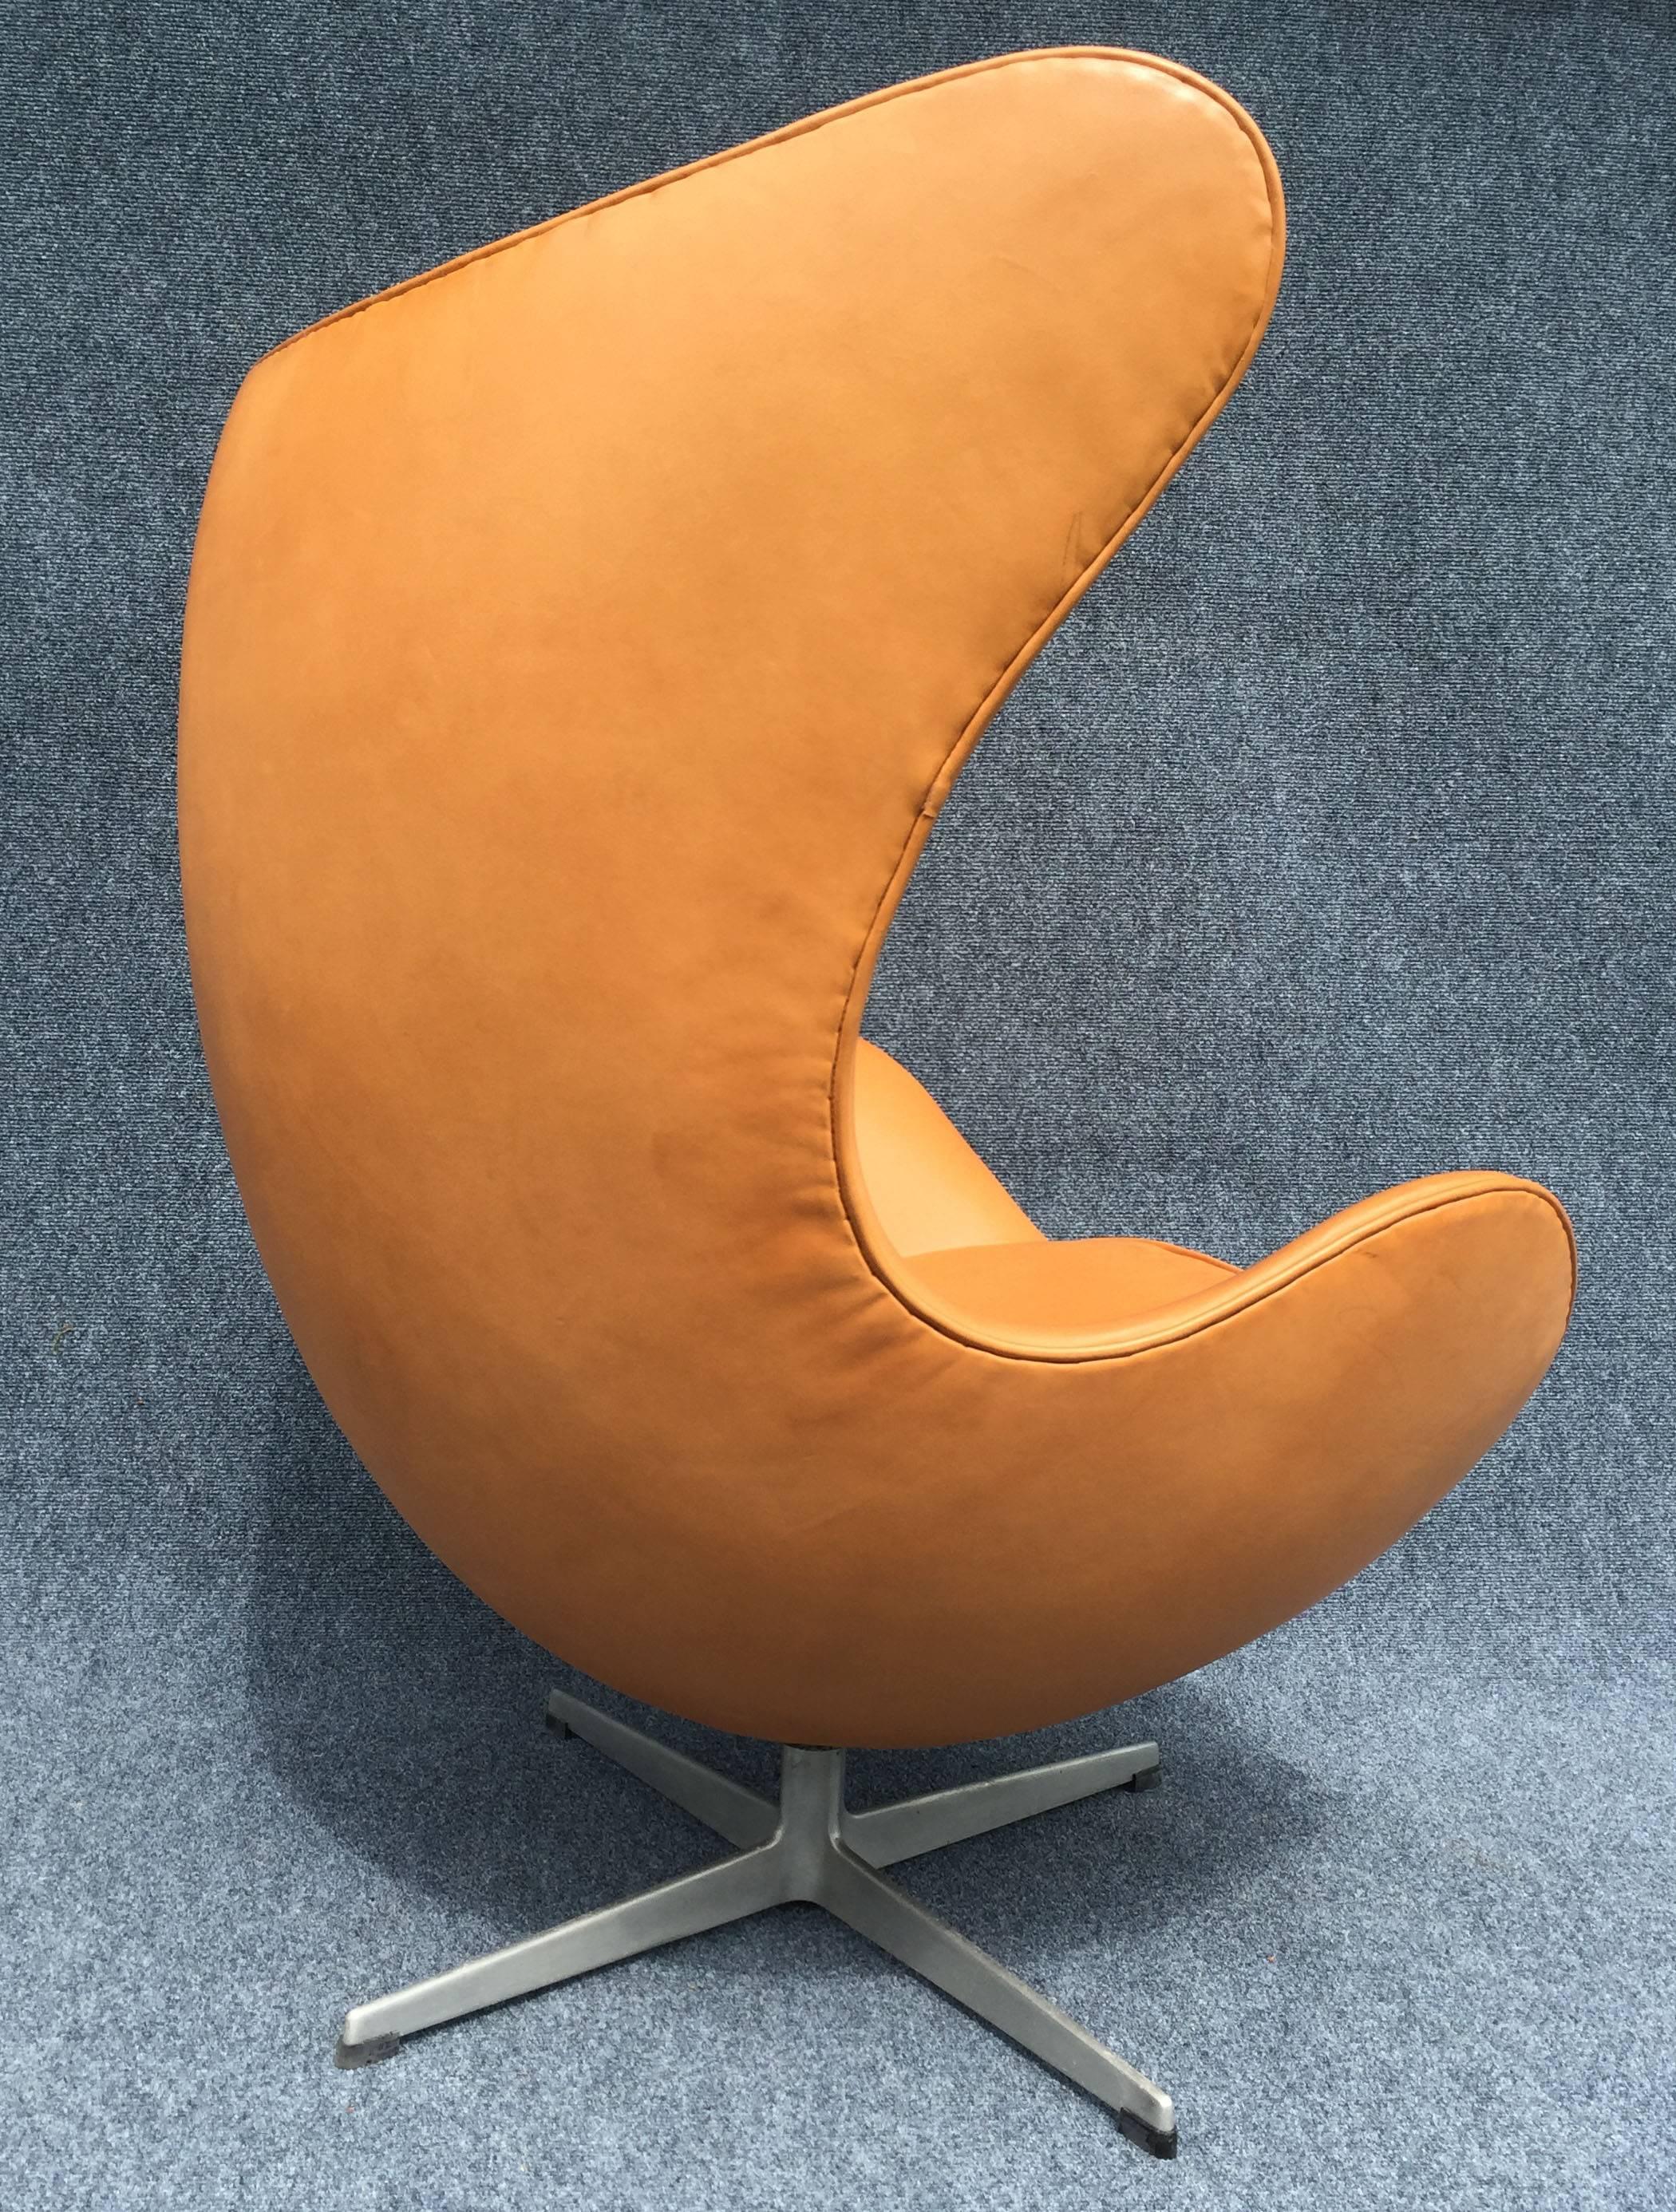 Danish Cognac Leather Egg Chair by Arne Jacobsen for Fritz Hansen